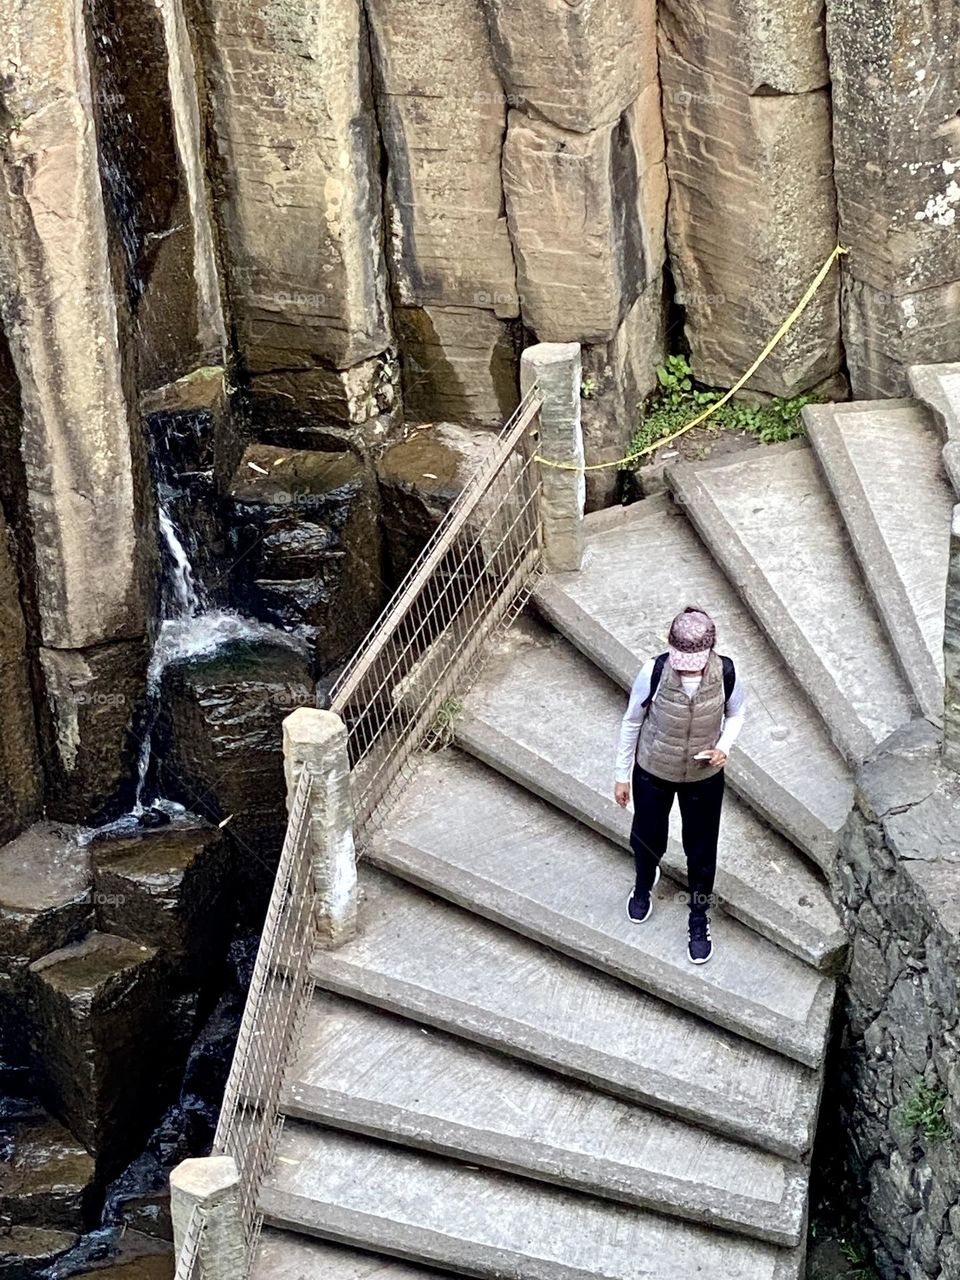 Prismas Basáltico, Mexico,Hidalgo,agua,piedras,persona,escaleras